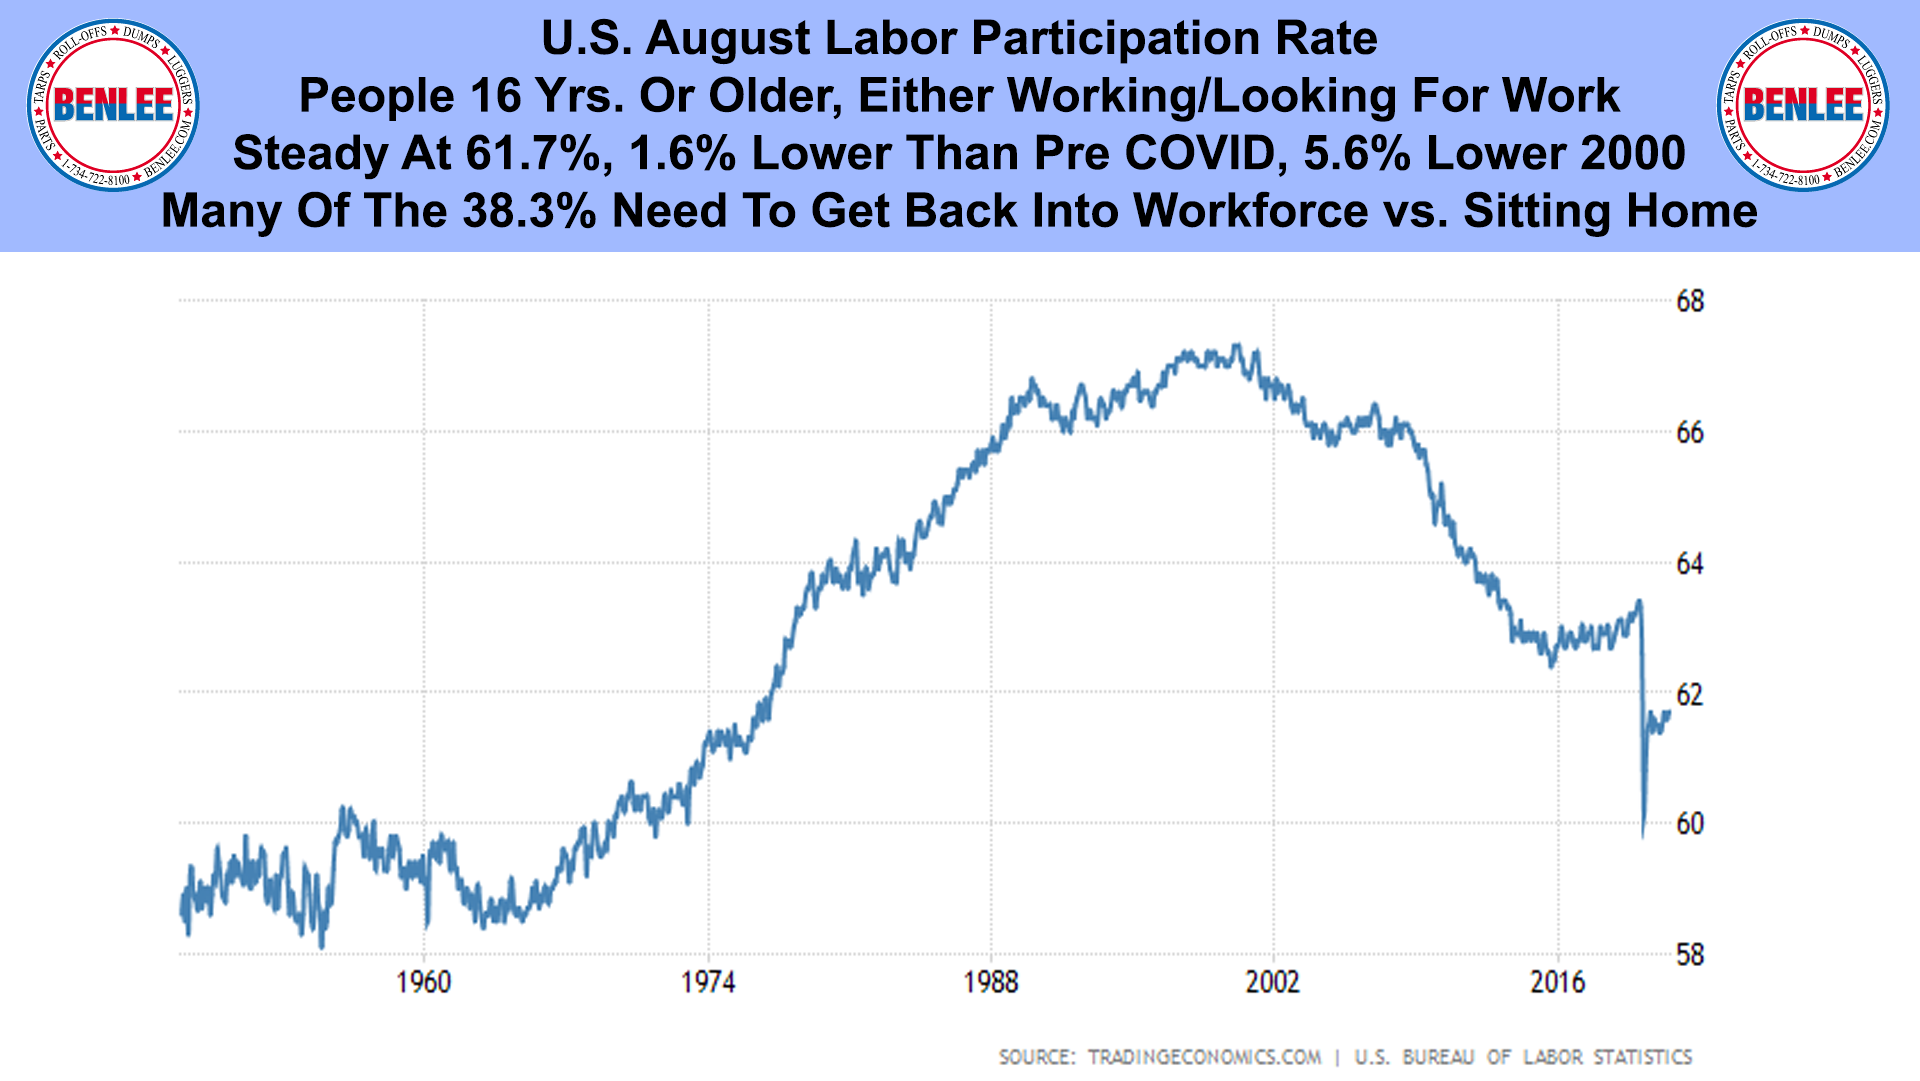 U.S. August Labor Participation Rate